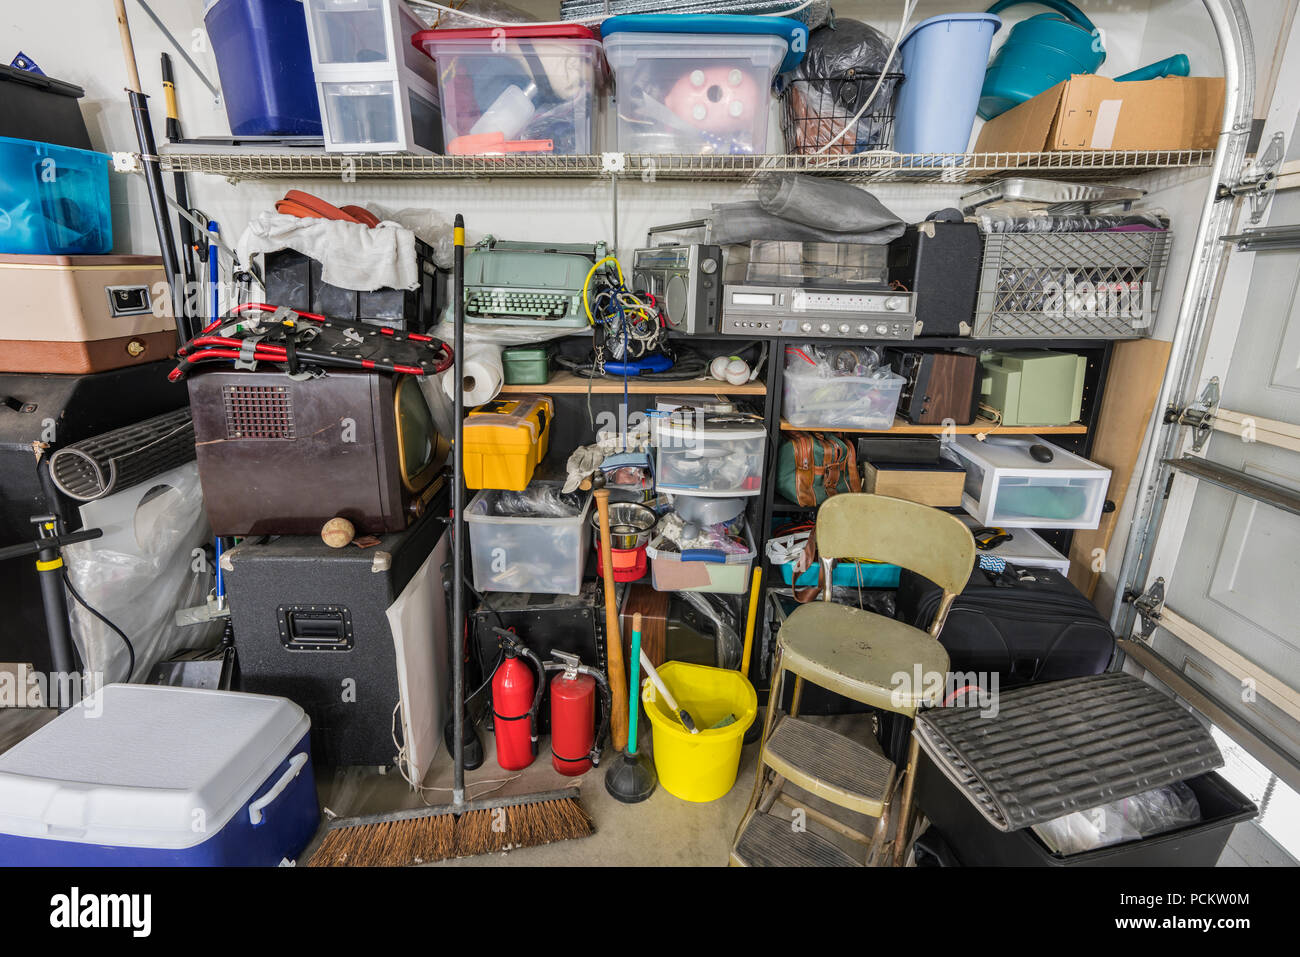 Chaotisch überladen Junk gefüllt suburban Garage Regale mit Vintage Elektronik, Haushaltswaren und Sportgeräte. Stockfoto